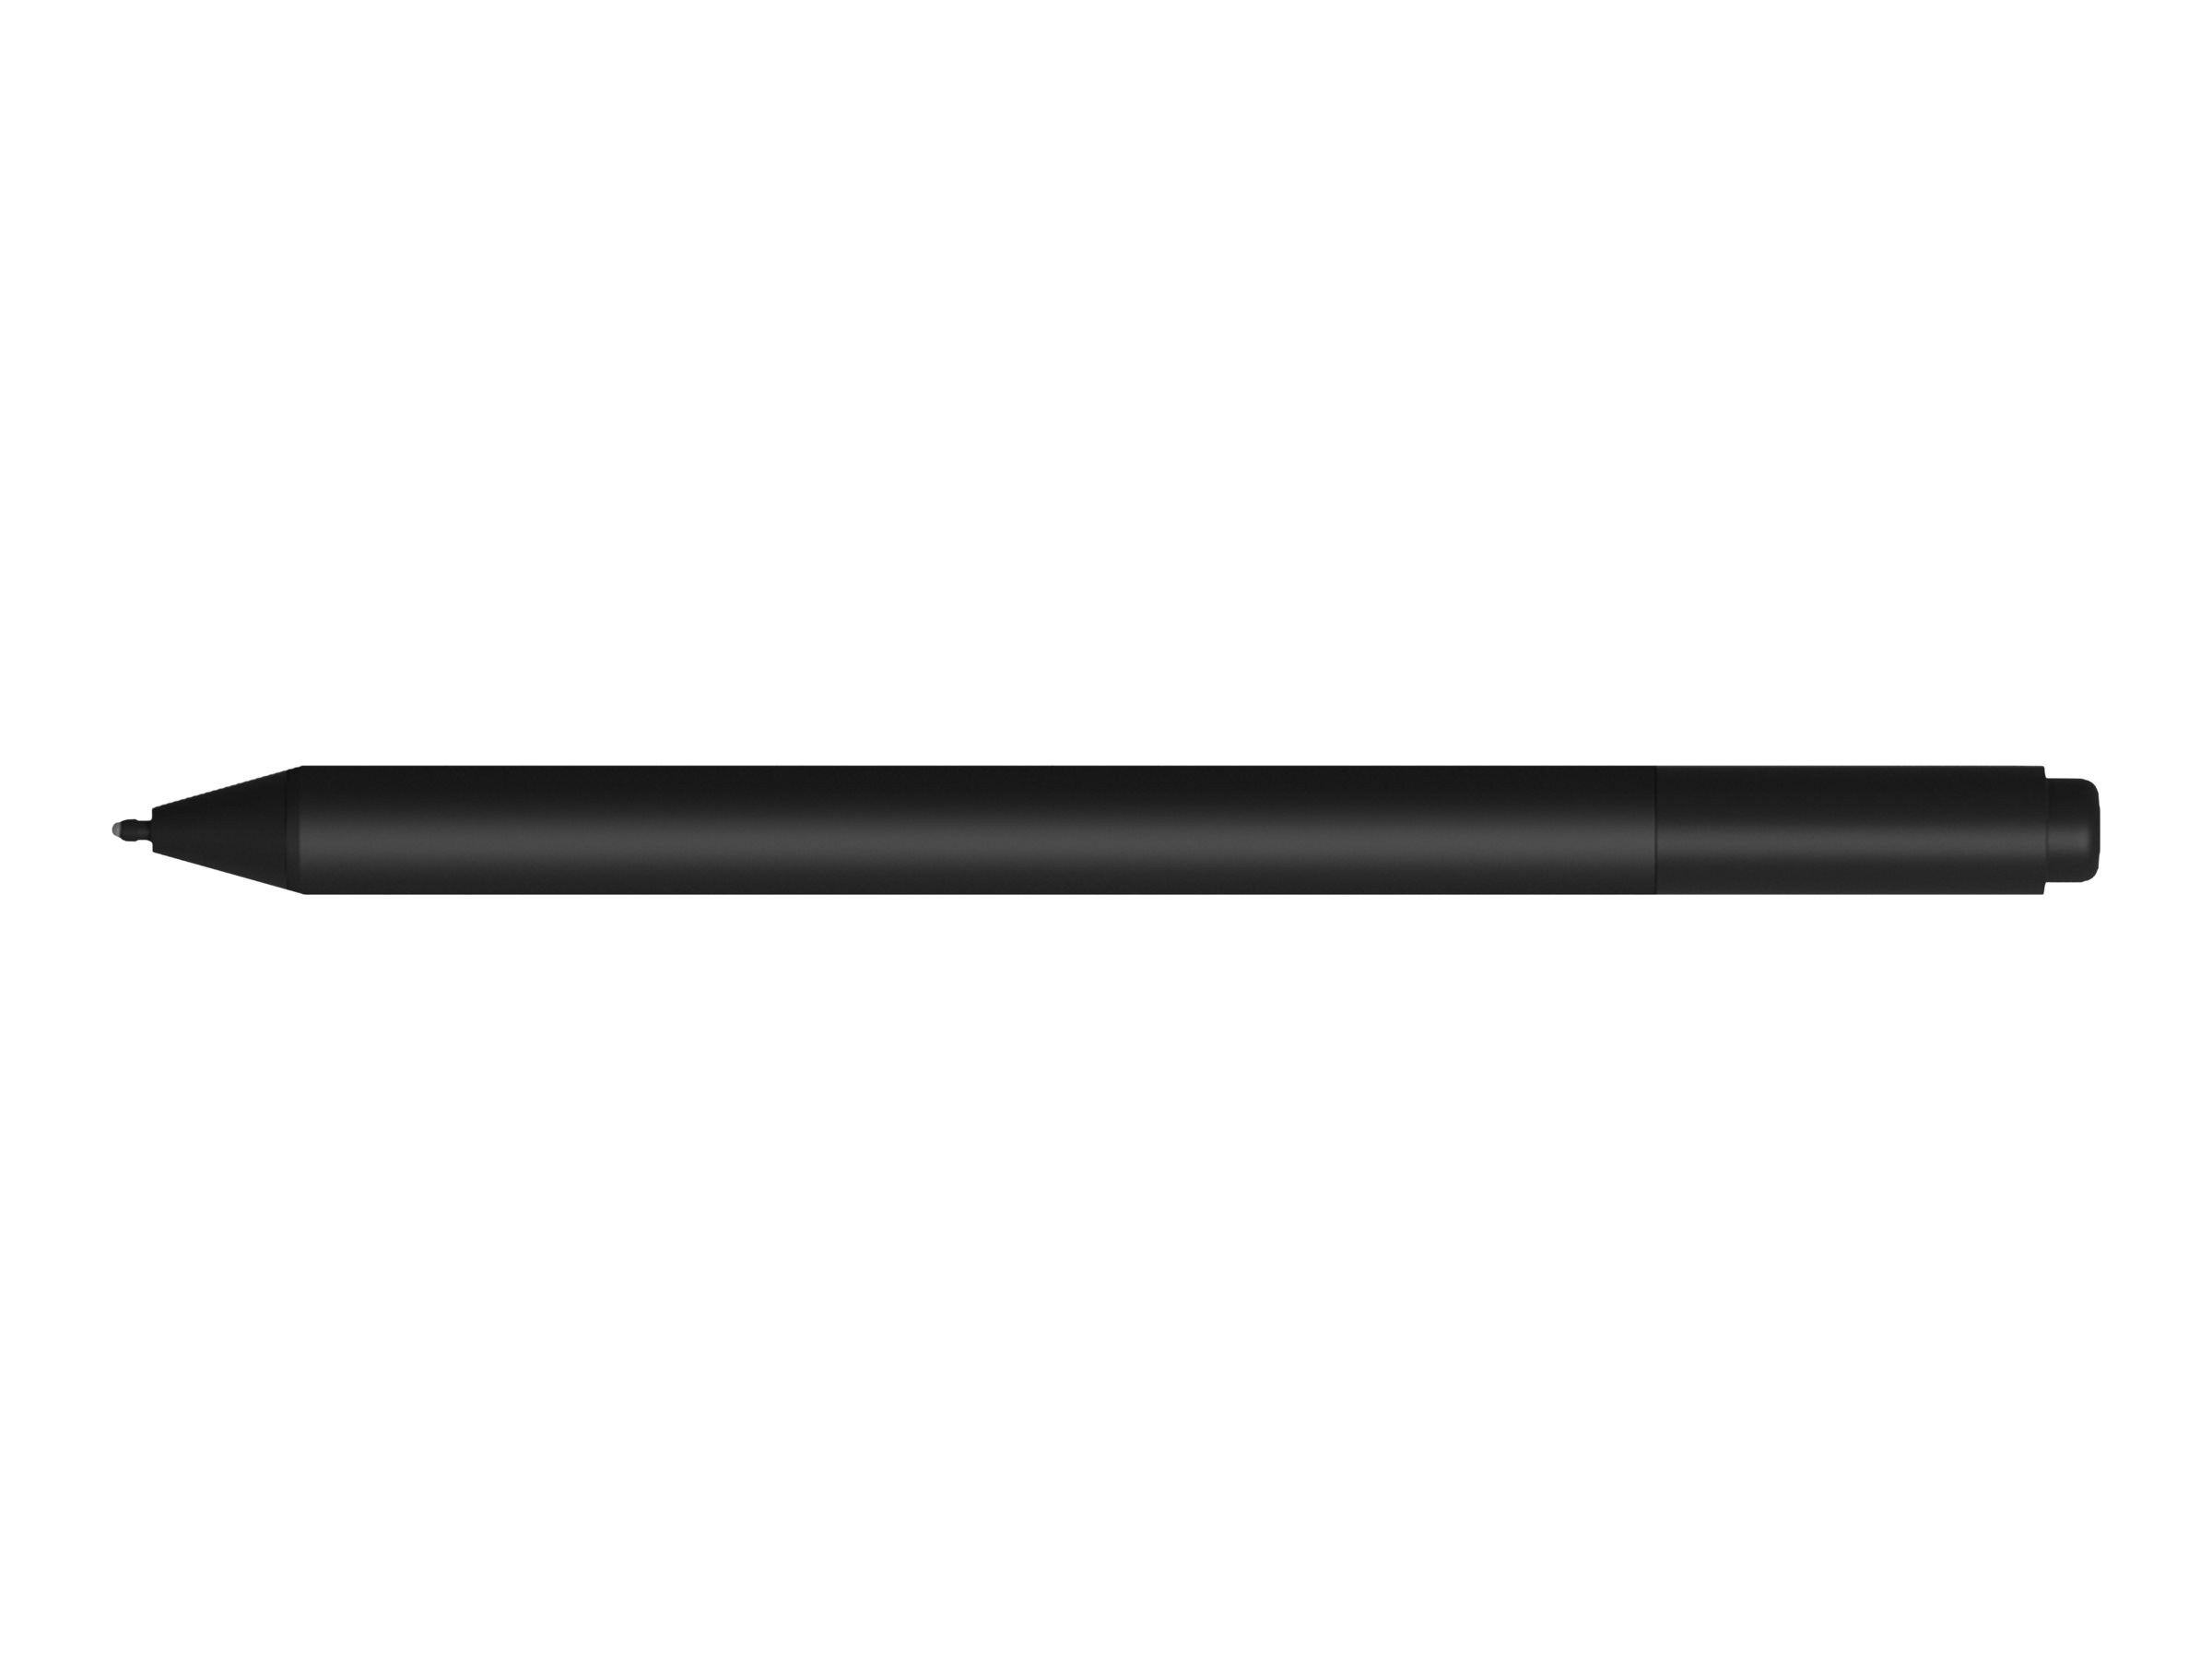 Microsoft Surface Pen Charcoal (EYV-00002)